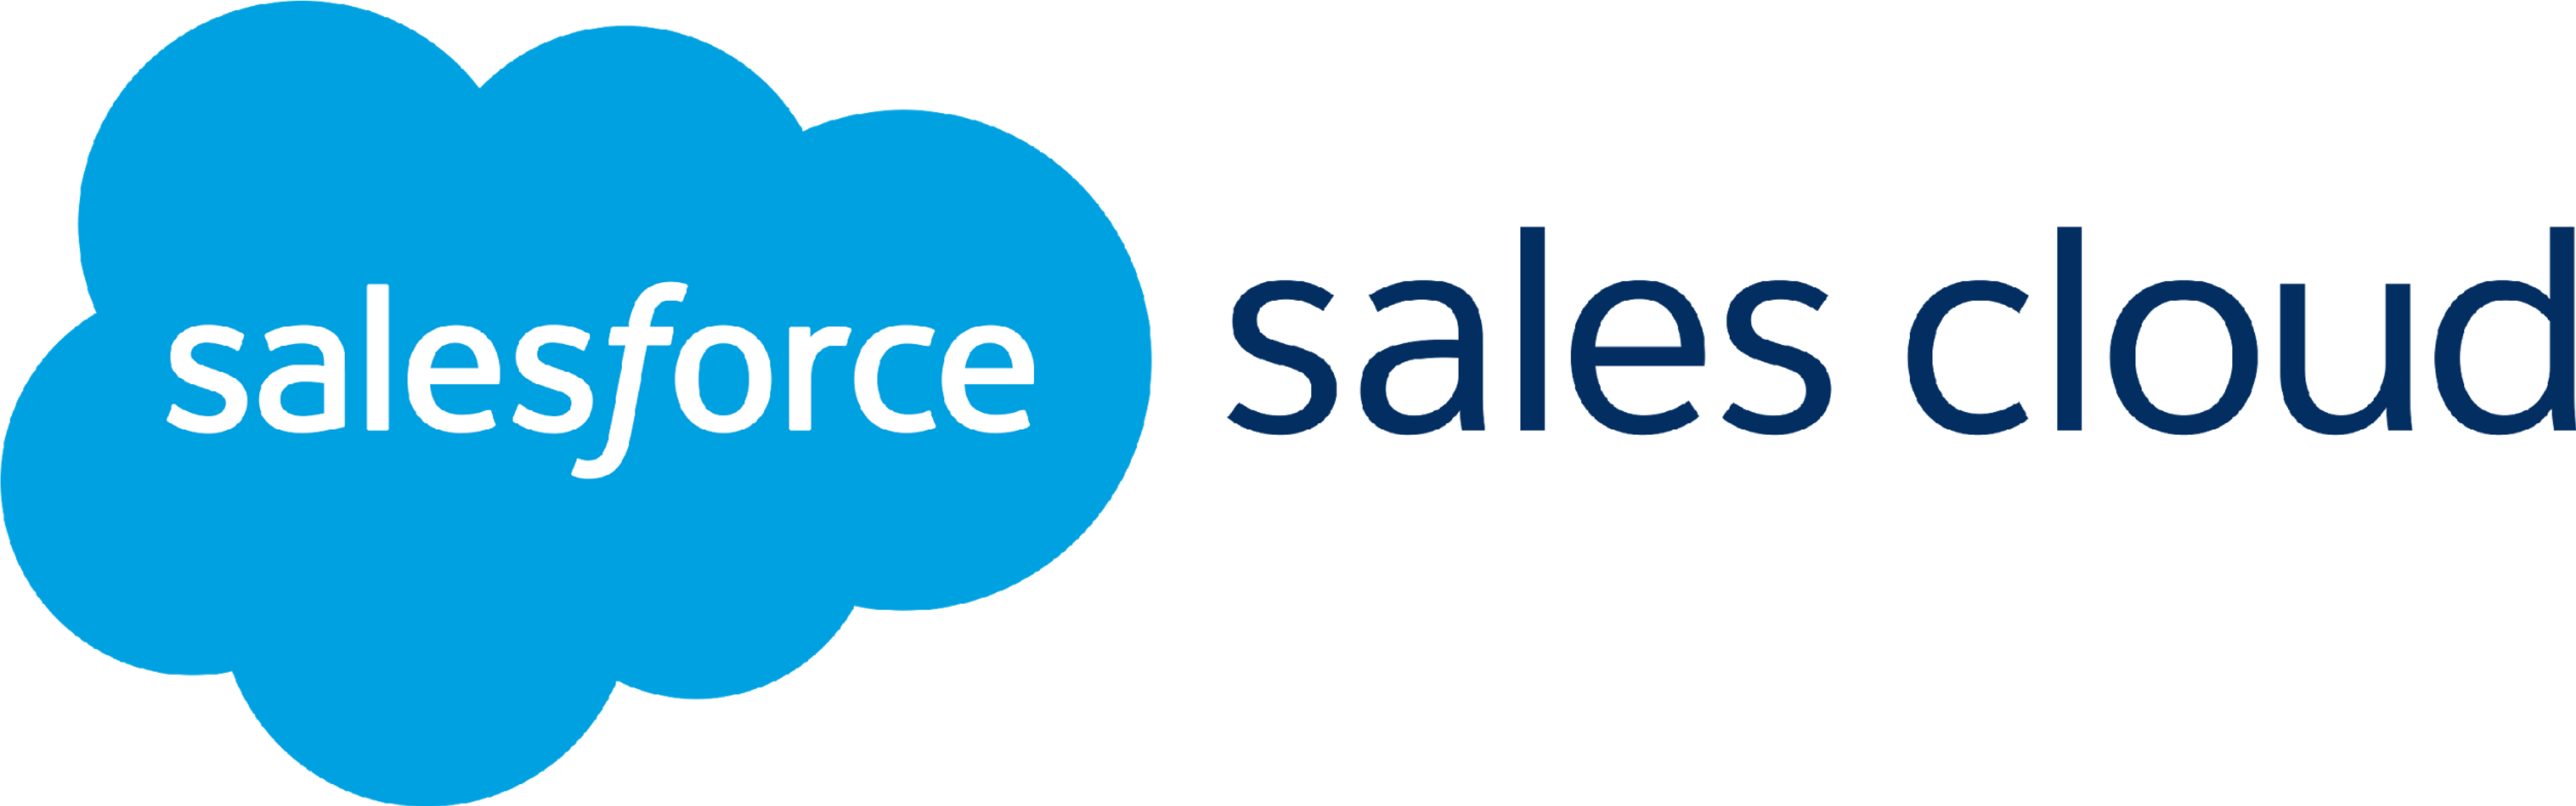 Salesforce Sales Cloud Logo - SoftwareReviews | Salesforce Sales Cloud | Make Better IT Decisions